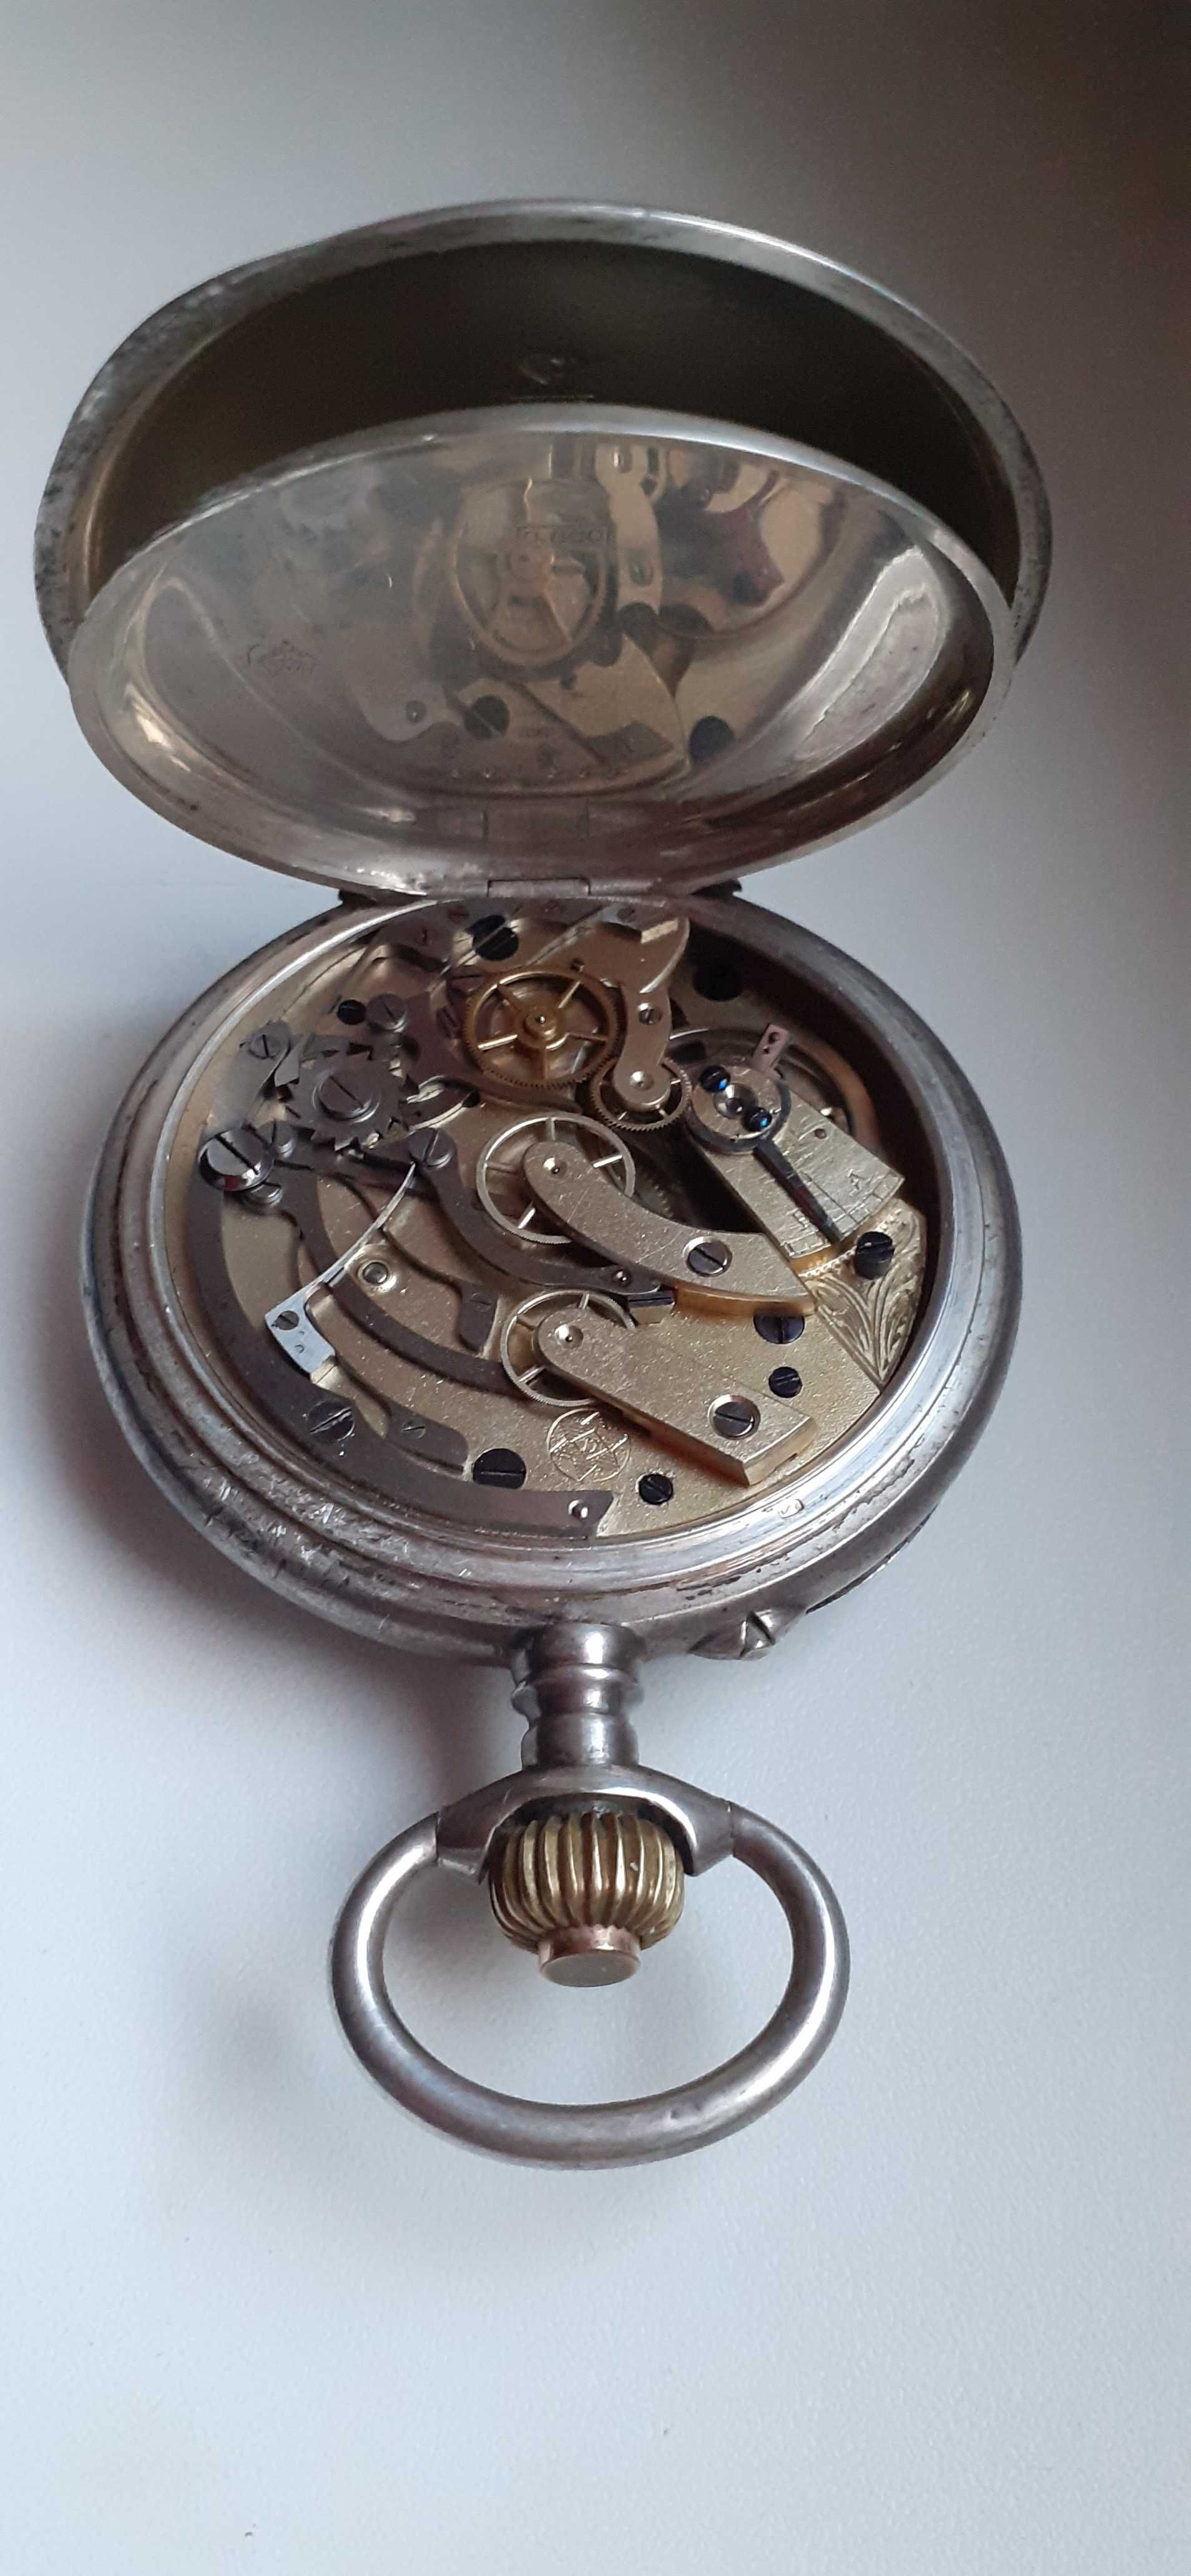 Srebro 800 sygnowany zegarek kieszonkowy Chronograf-JUNGHANS.